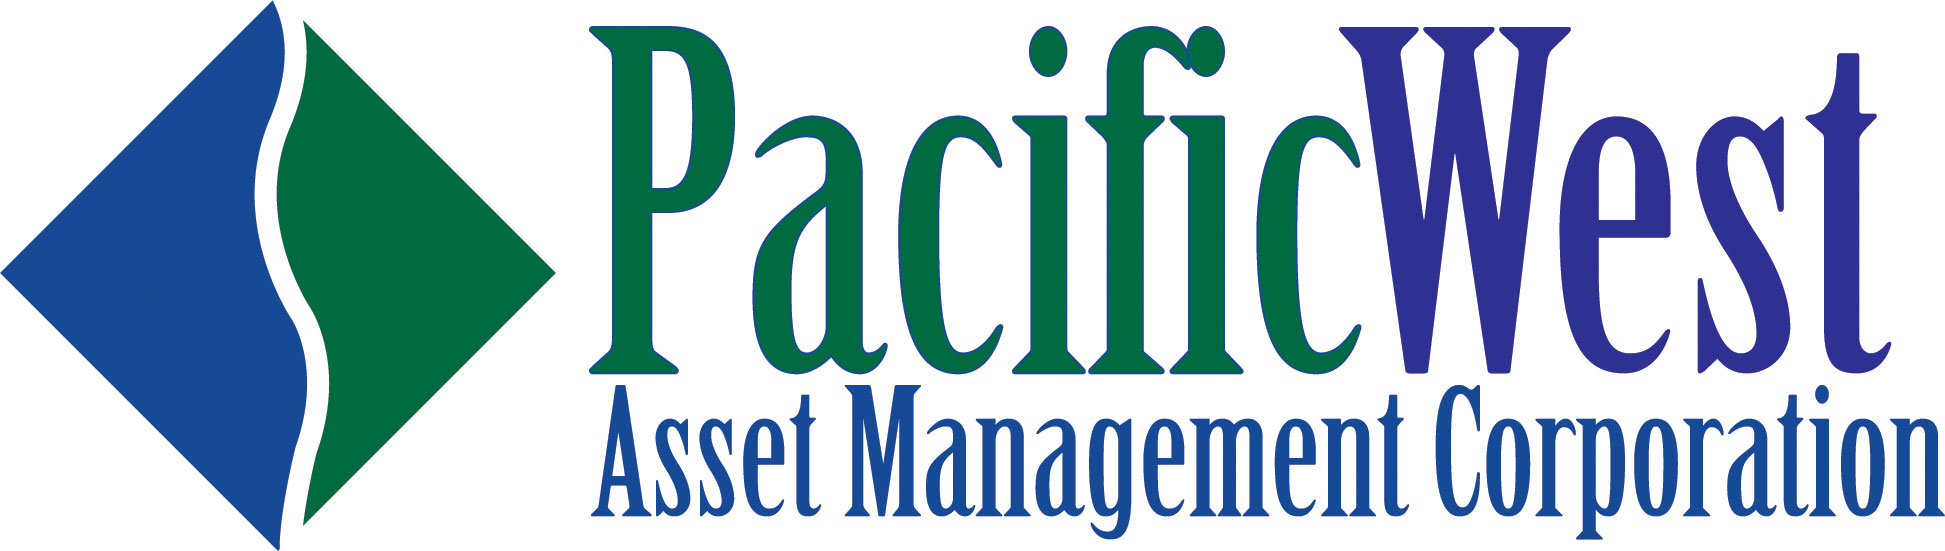 Pacific West Asset Management Corporation